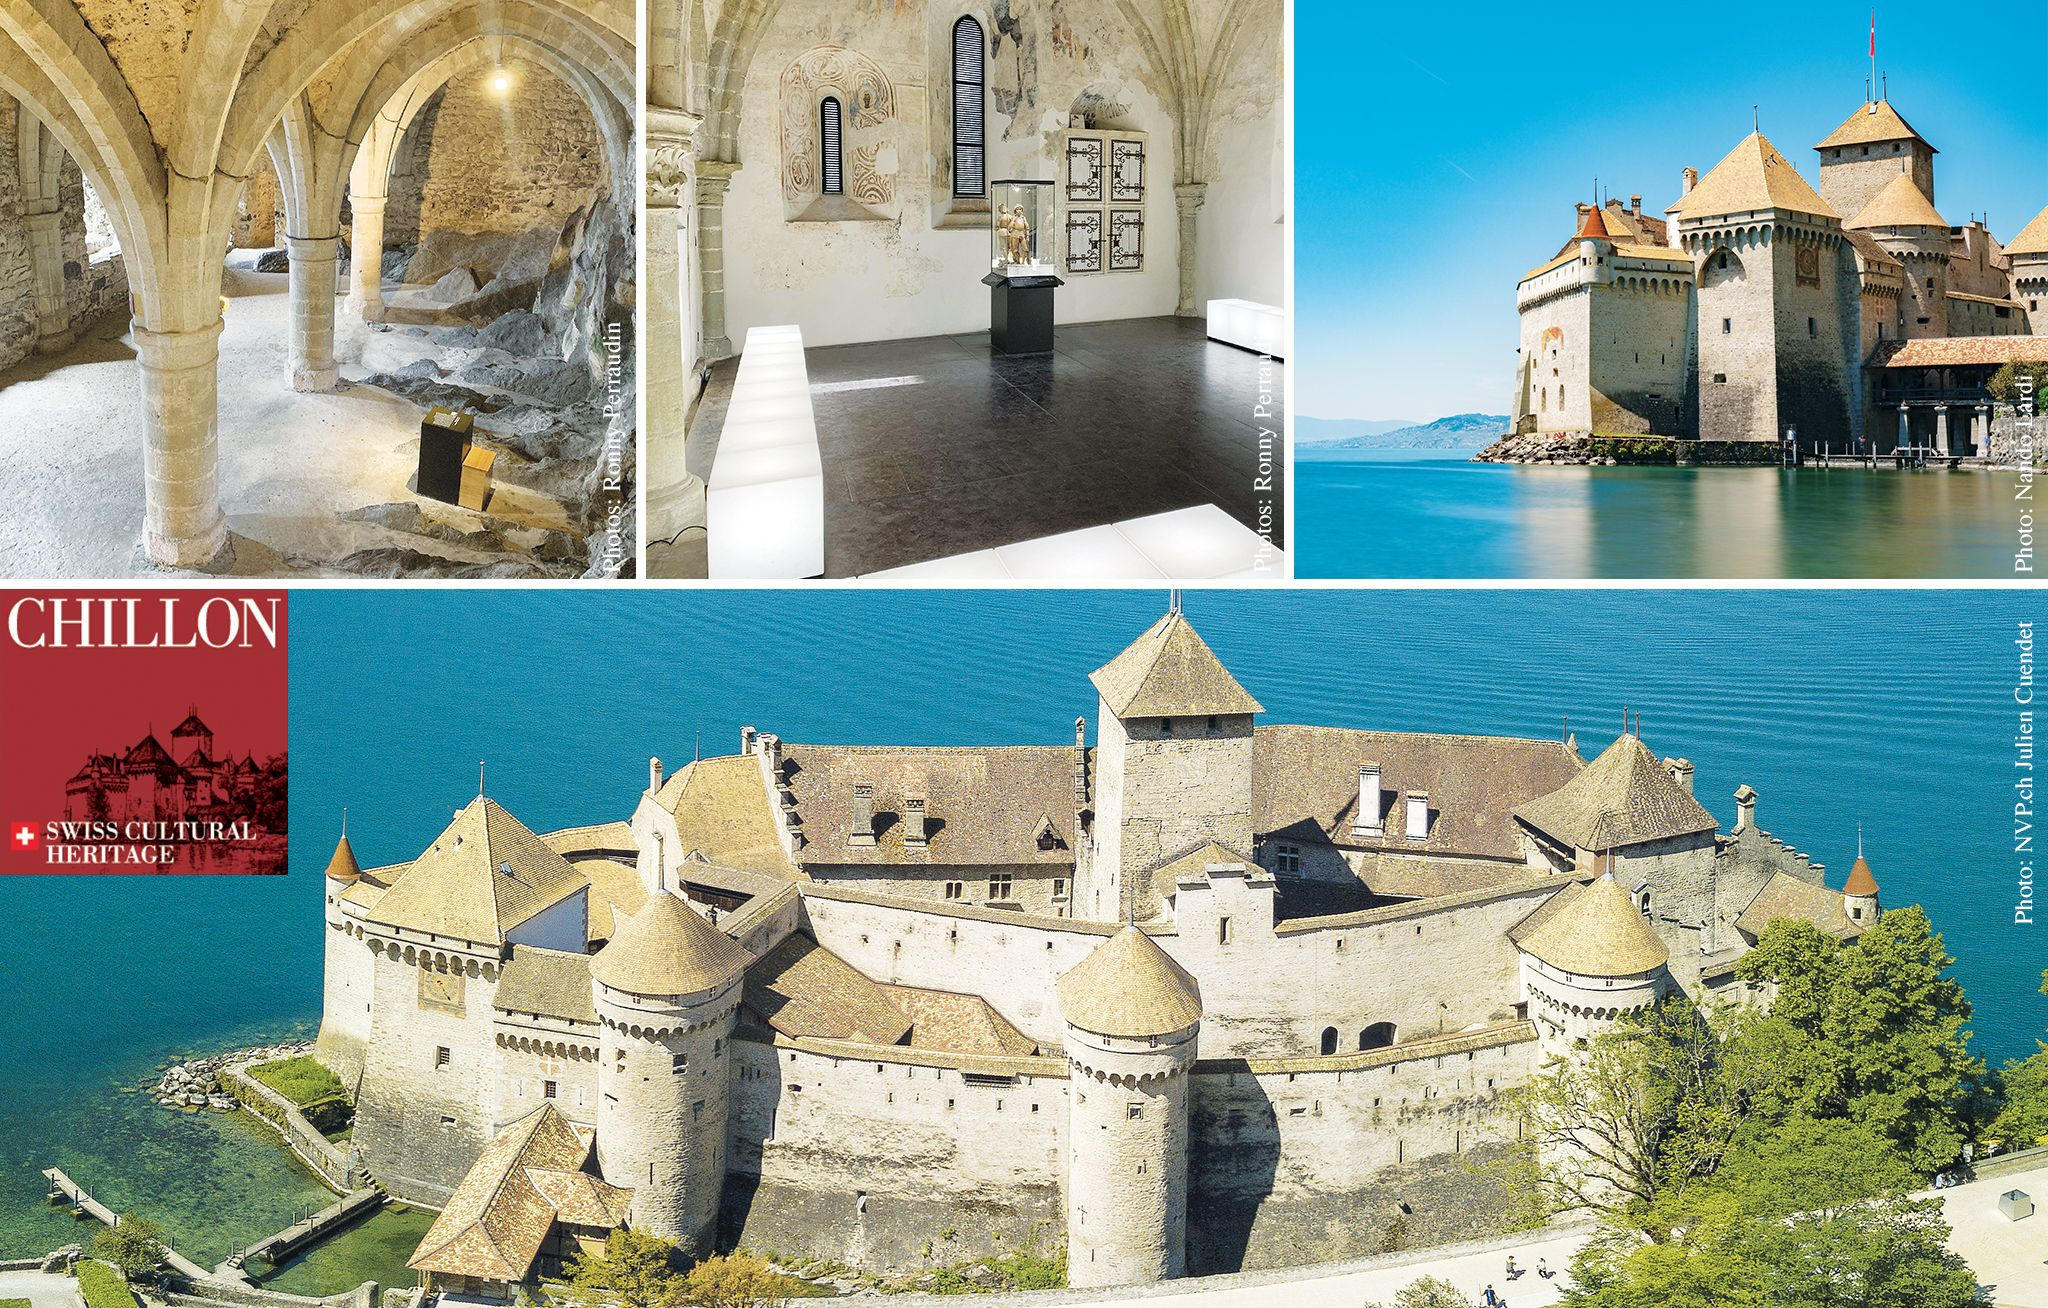 Chillon - Le château médiéval et romantique à visiter absolument - cChic Magazine - Prestige luxe culture art de vivre